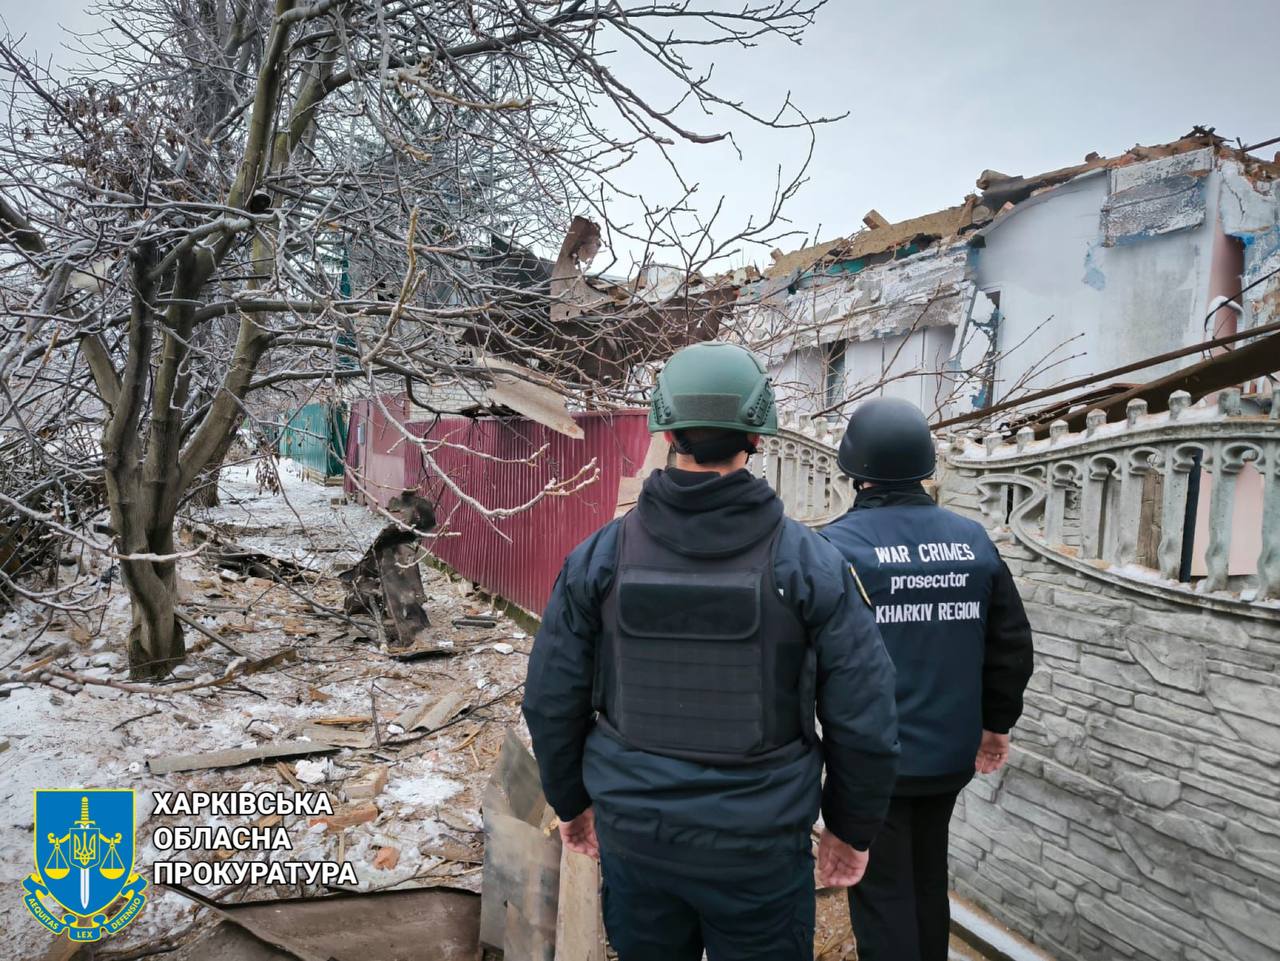 Russian attacks kill 1, injure 2 in Kharkiv Oblast